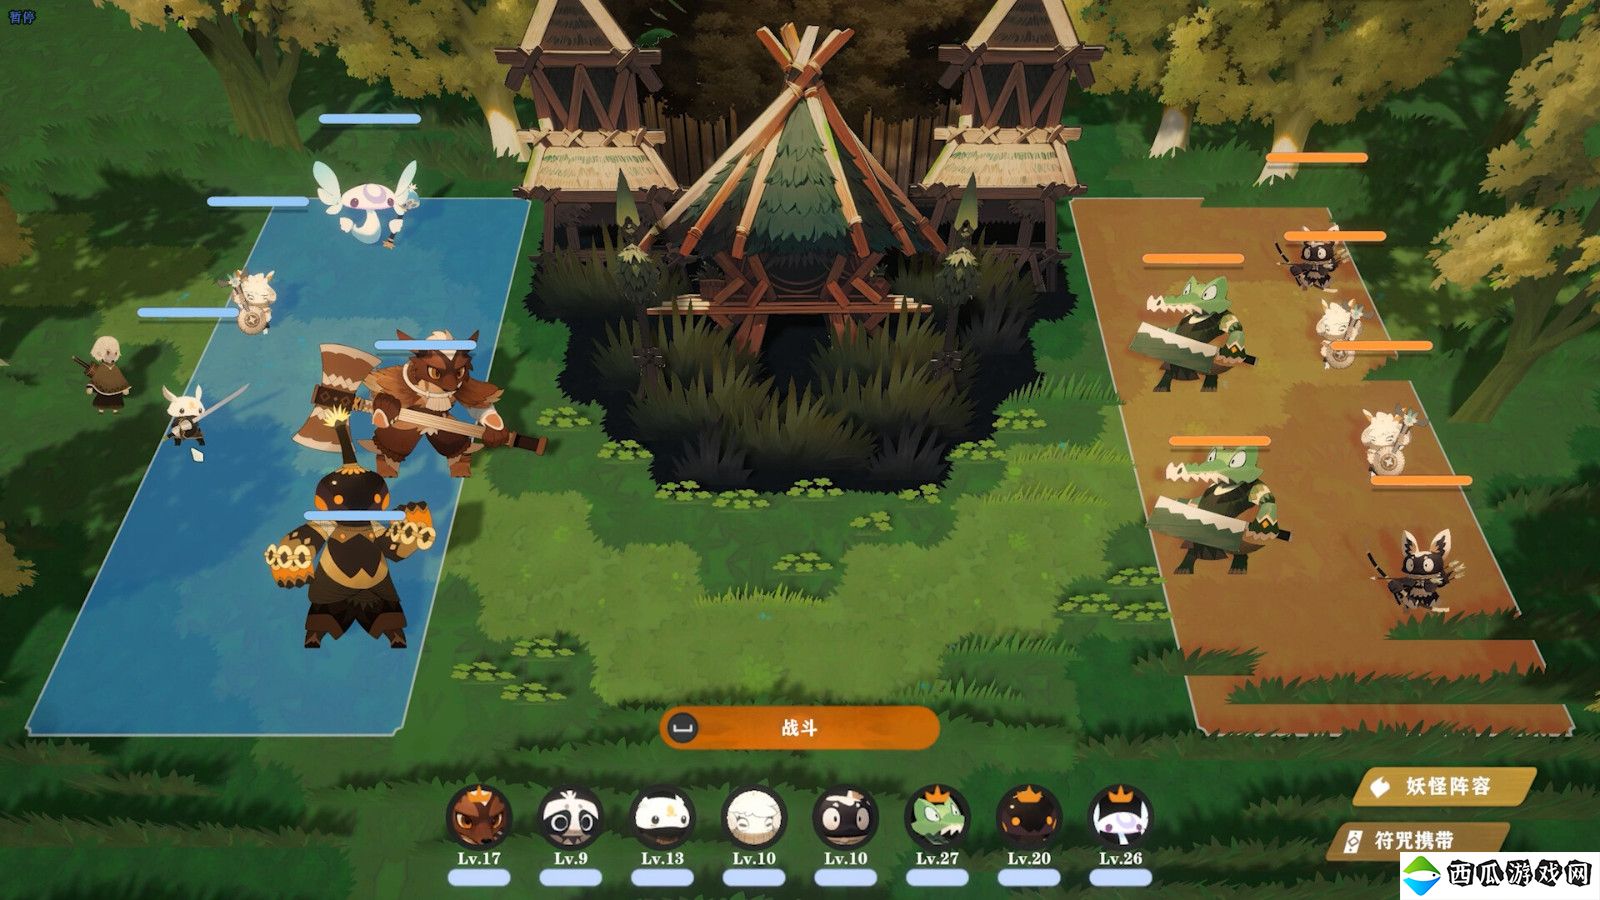 怪物收集RPG冒险游戏《妖之乡》 7月16日正式发售